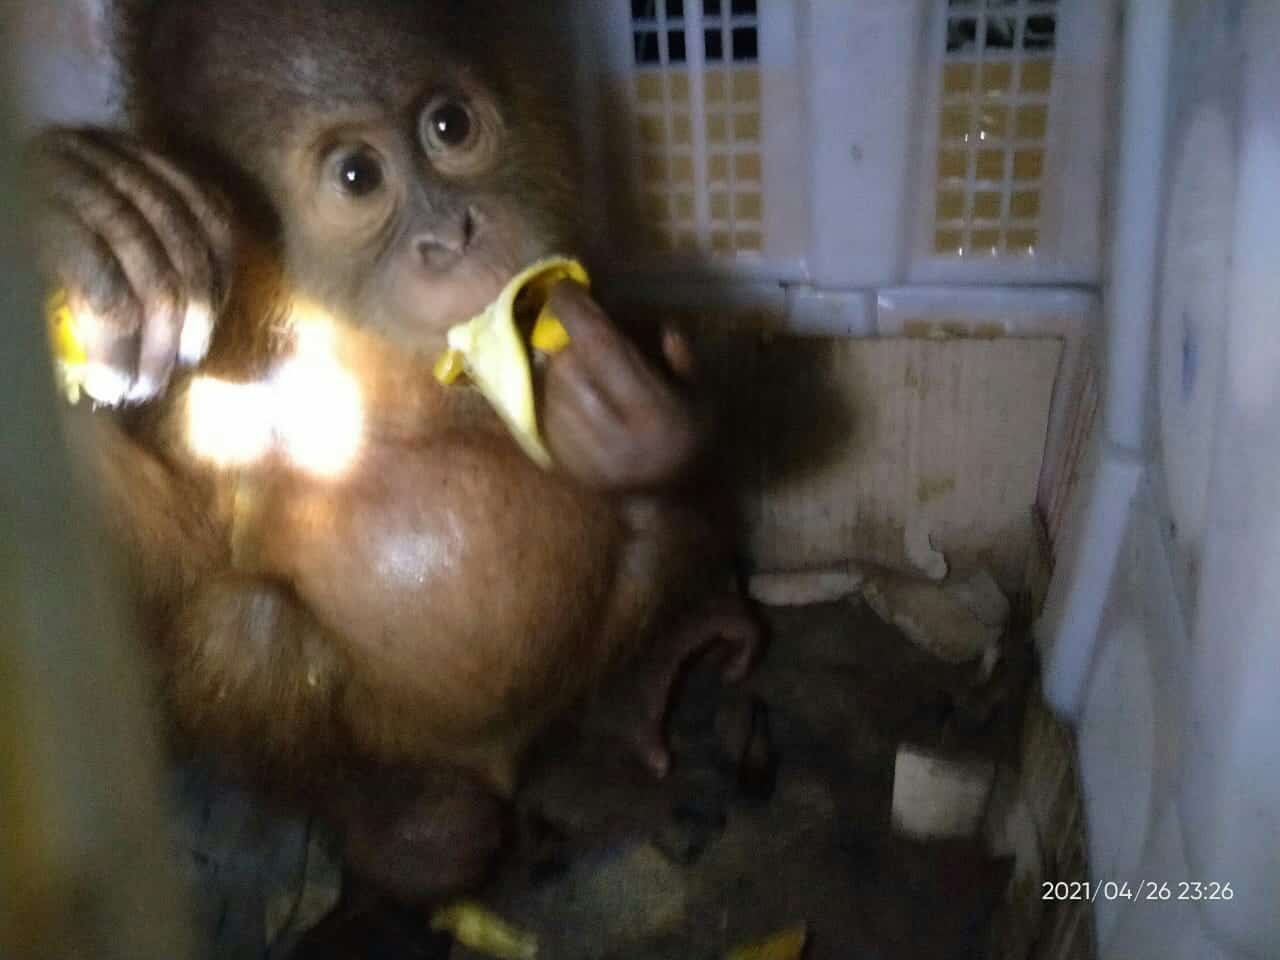 Penyelundupan 2 Anak Orangutan di Bakauheni Digagalkan